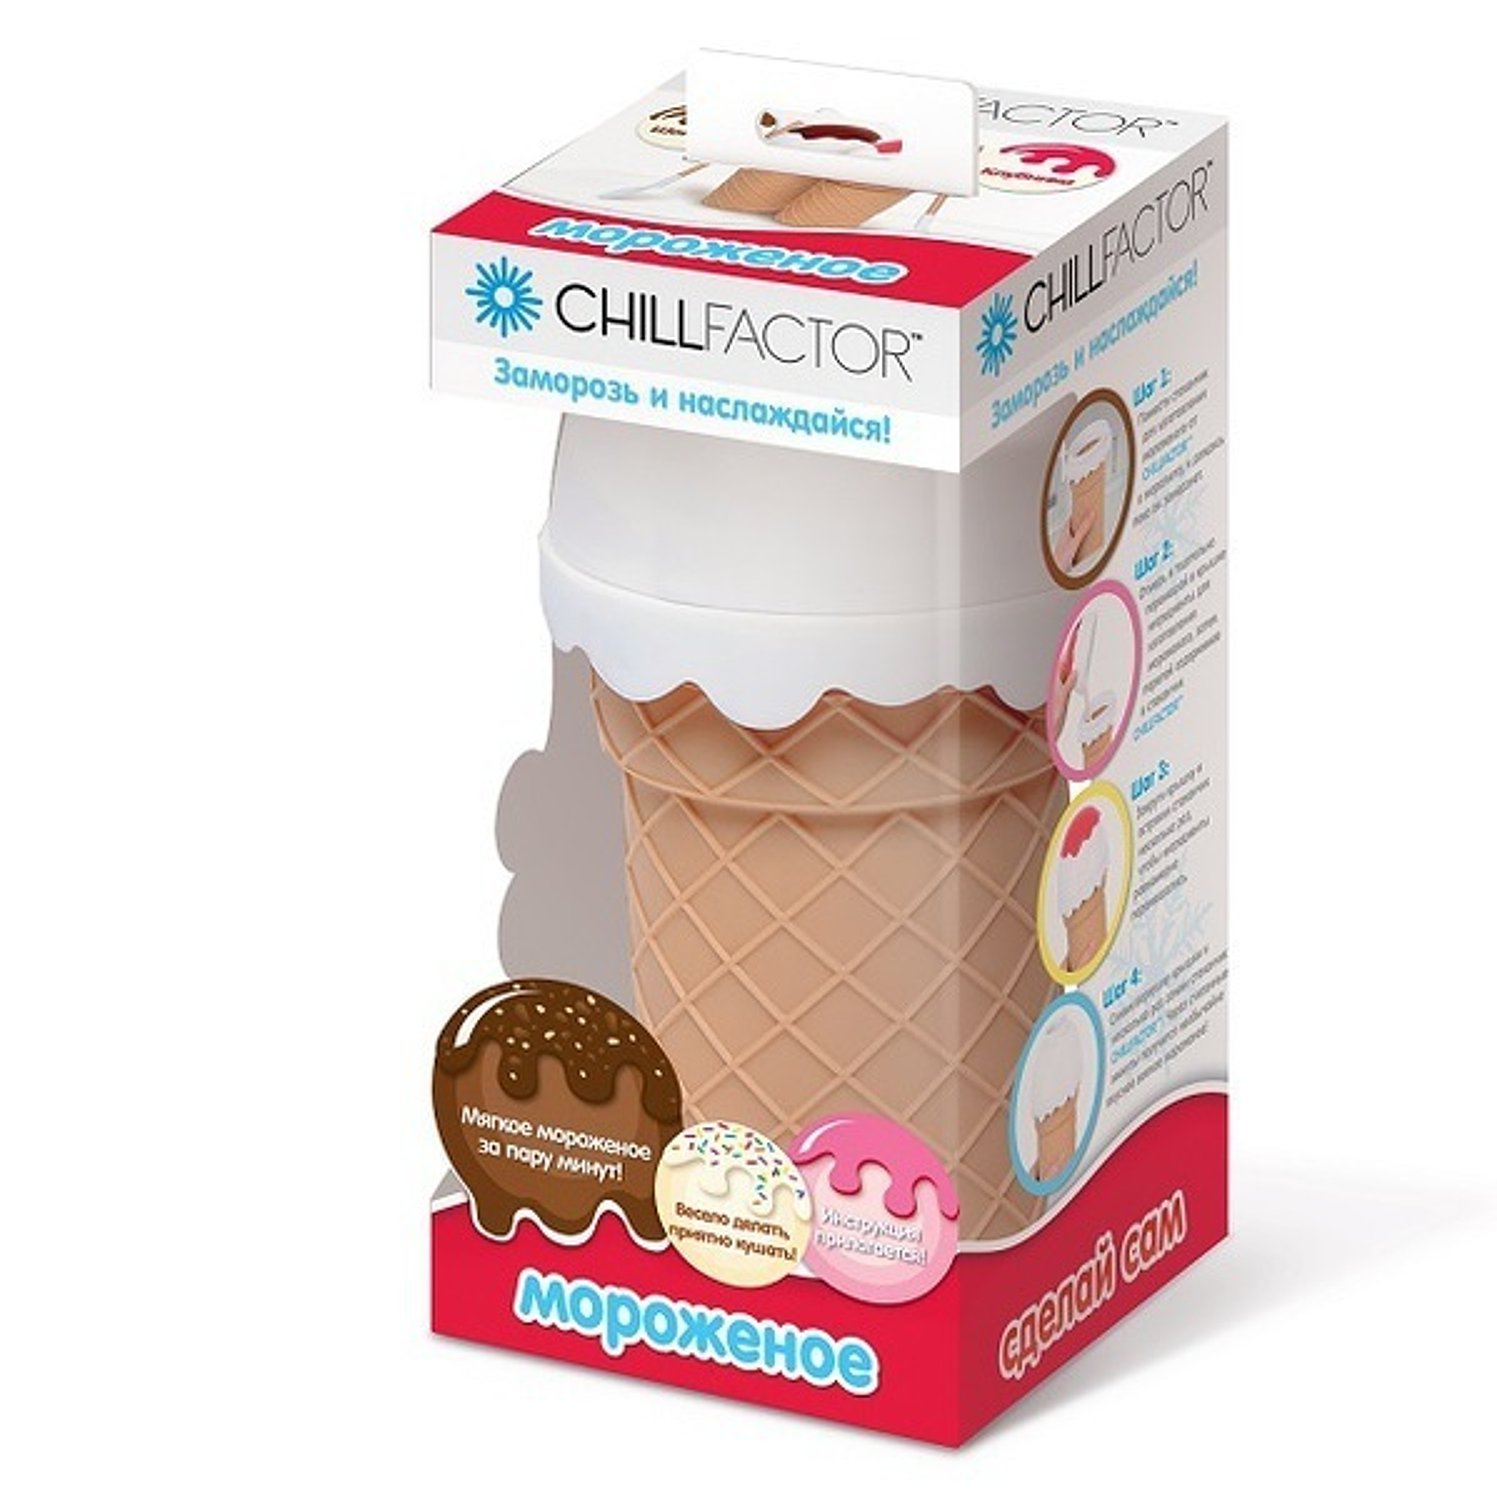 Стаканчик для мороженого Chillfactor Шоколад - фото 1